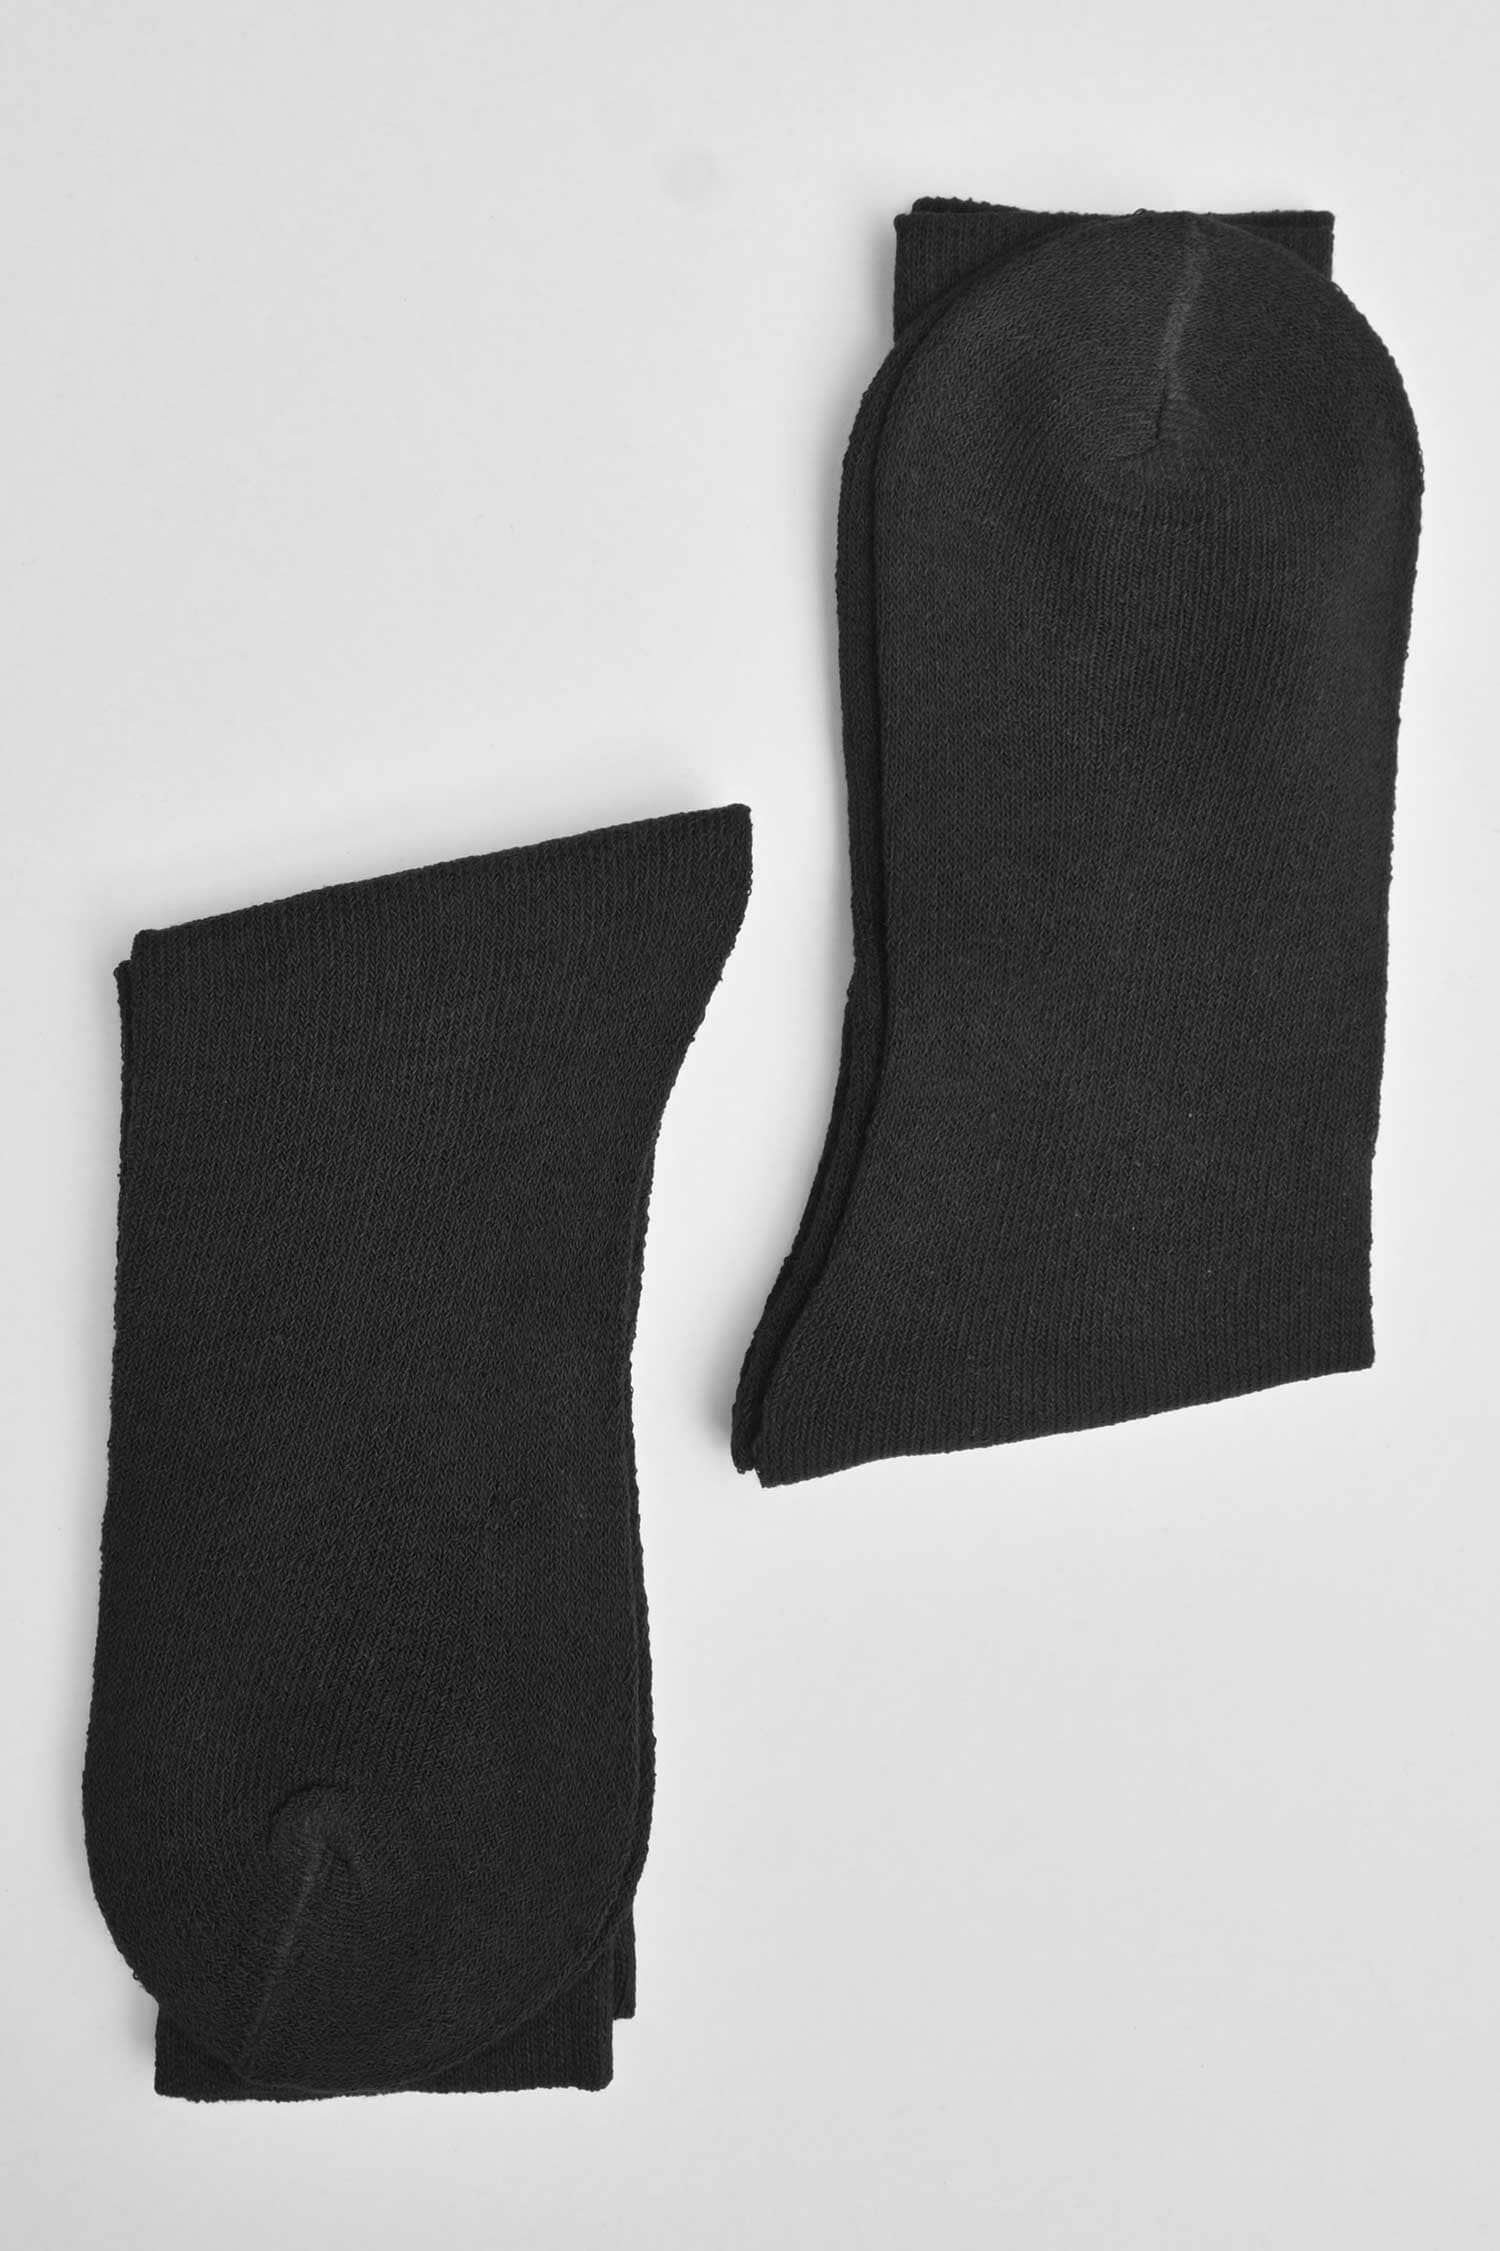 Men's Brussels Crew Socks - Pack Of 2 Pairs Socks ALE 